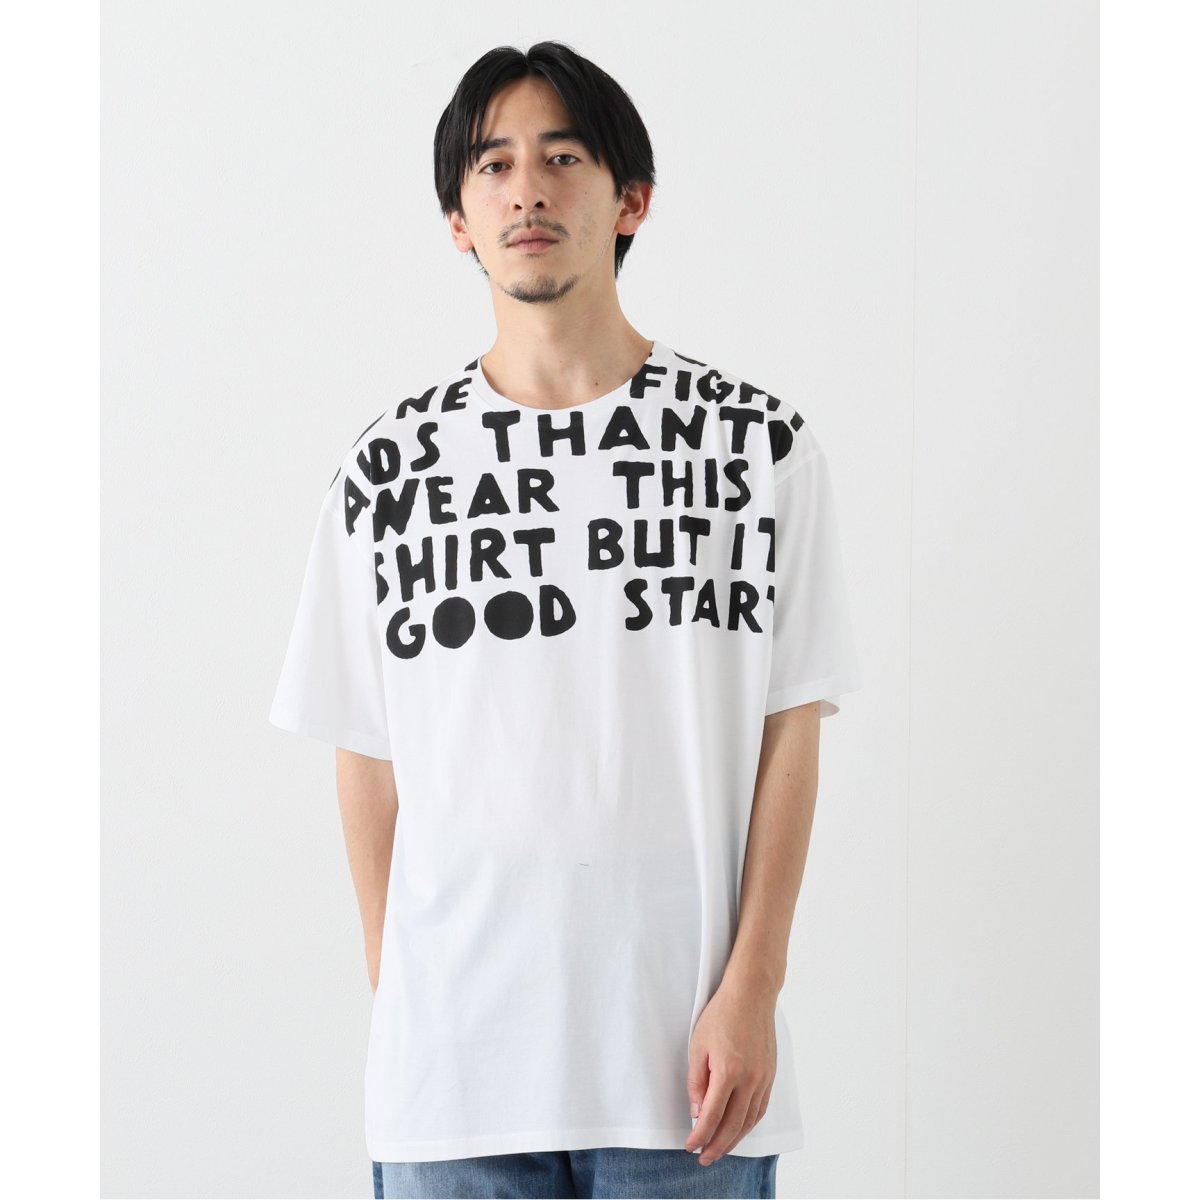 54cm袖丈メゾンマルジェラ チャリティー AIDS Tシャツ 半袖 ロゴT カットソー